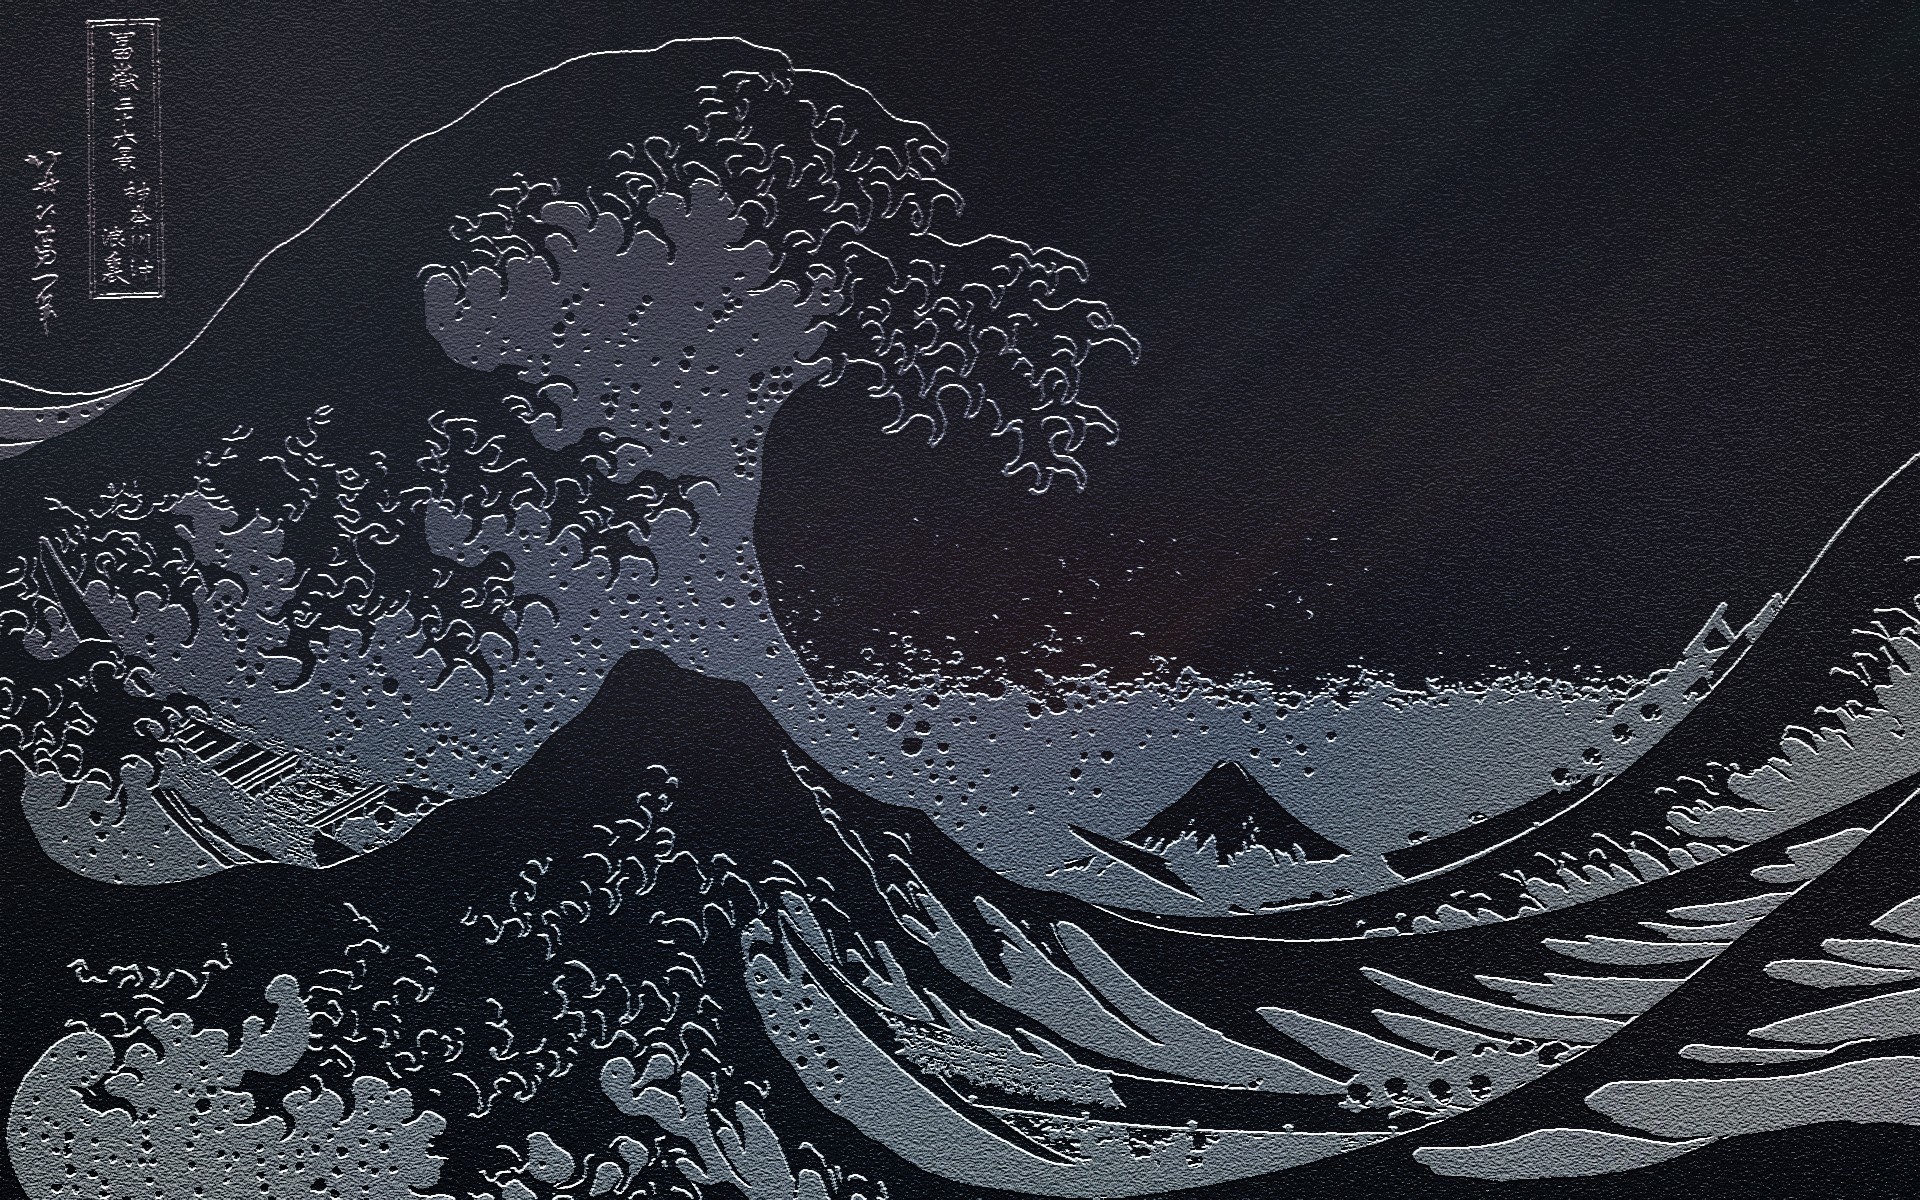 The Great Wave Off Kanagawa Wallpaper ·① WallpaperTag